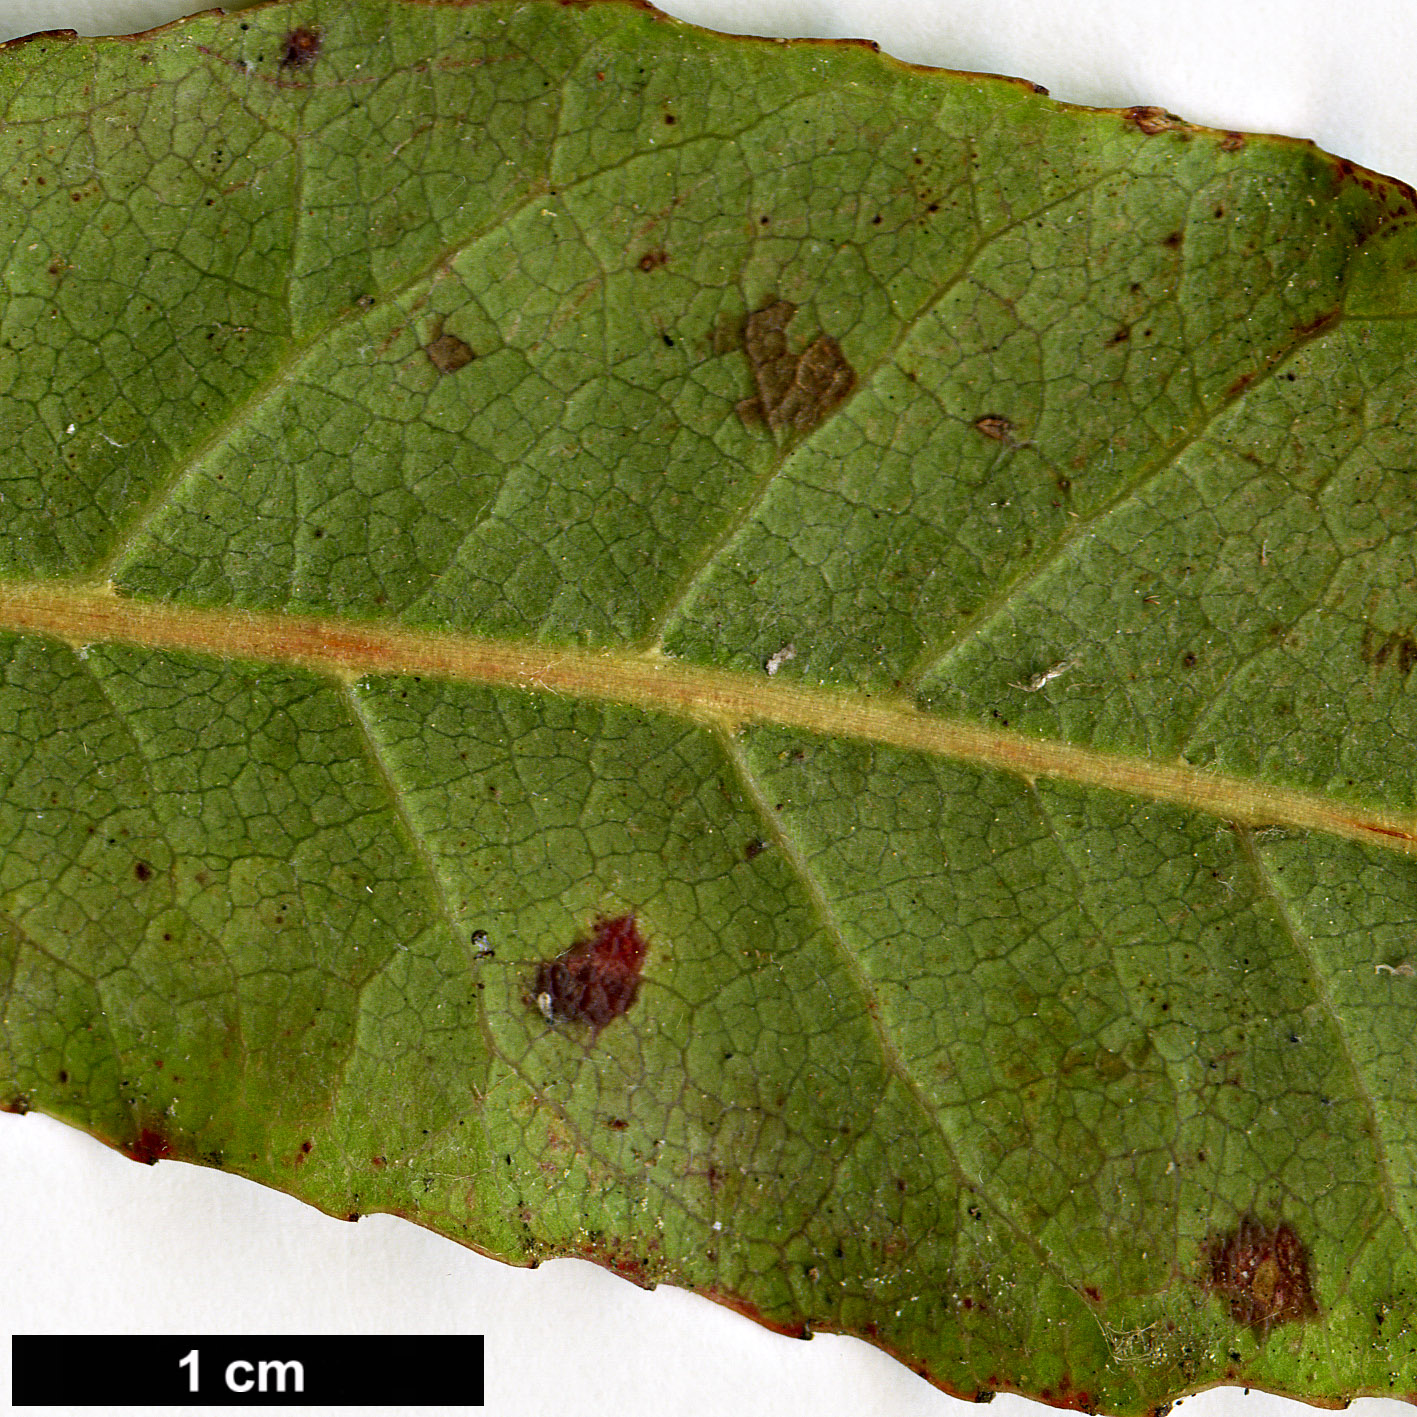 High resolution image: Family: Elaeocarpaceae - Genus: Elaeocarpus - Taxon: reticulatus